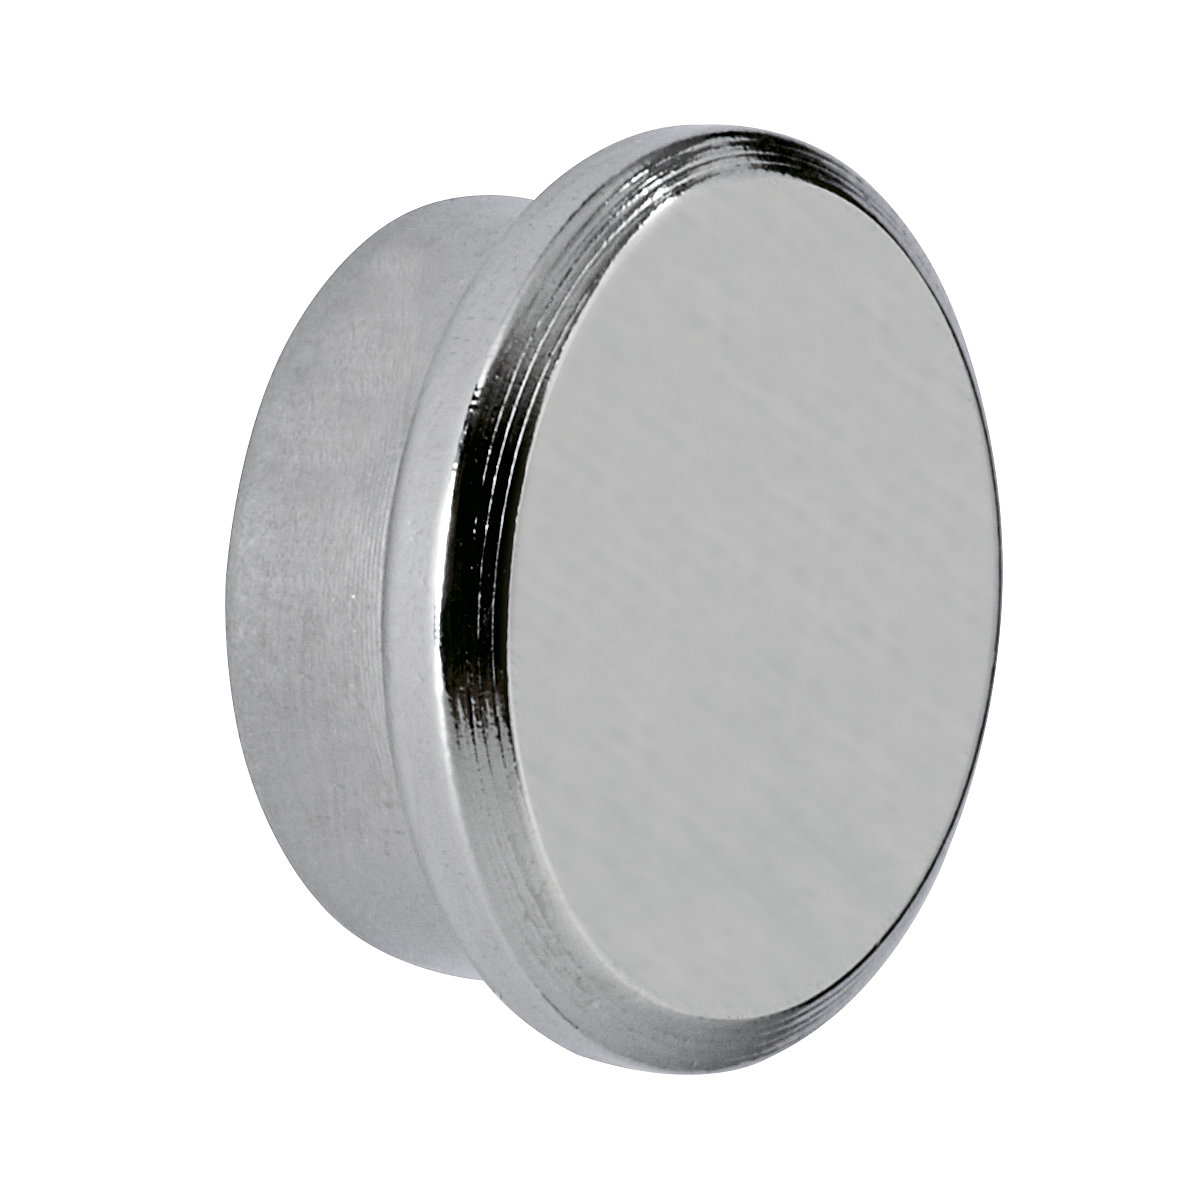 Silný neodymový magnet – MAUL, kruhový tvar, Ø 22 mm, adhezní síla 8 kg, bal.j. 10 ks-6